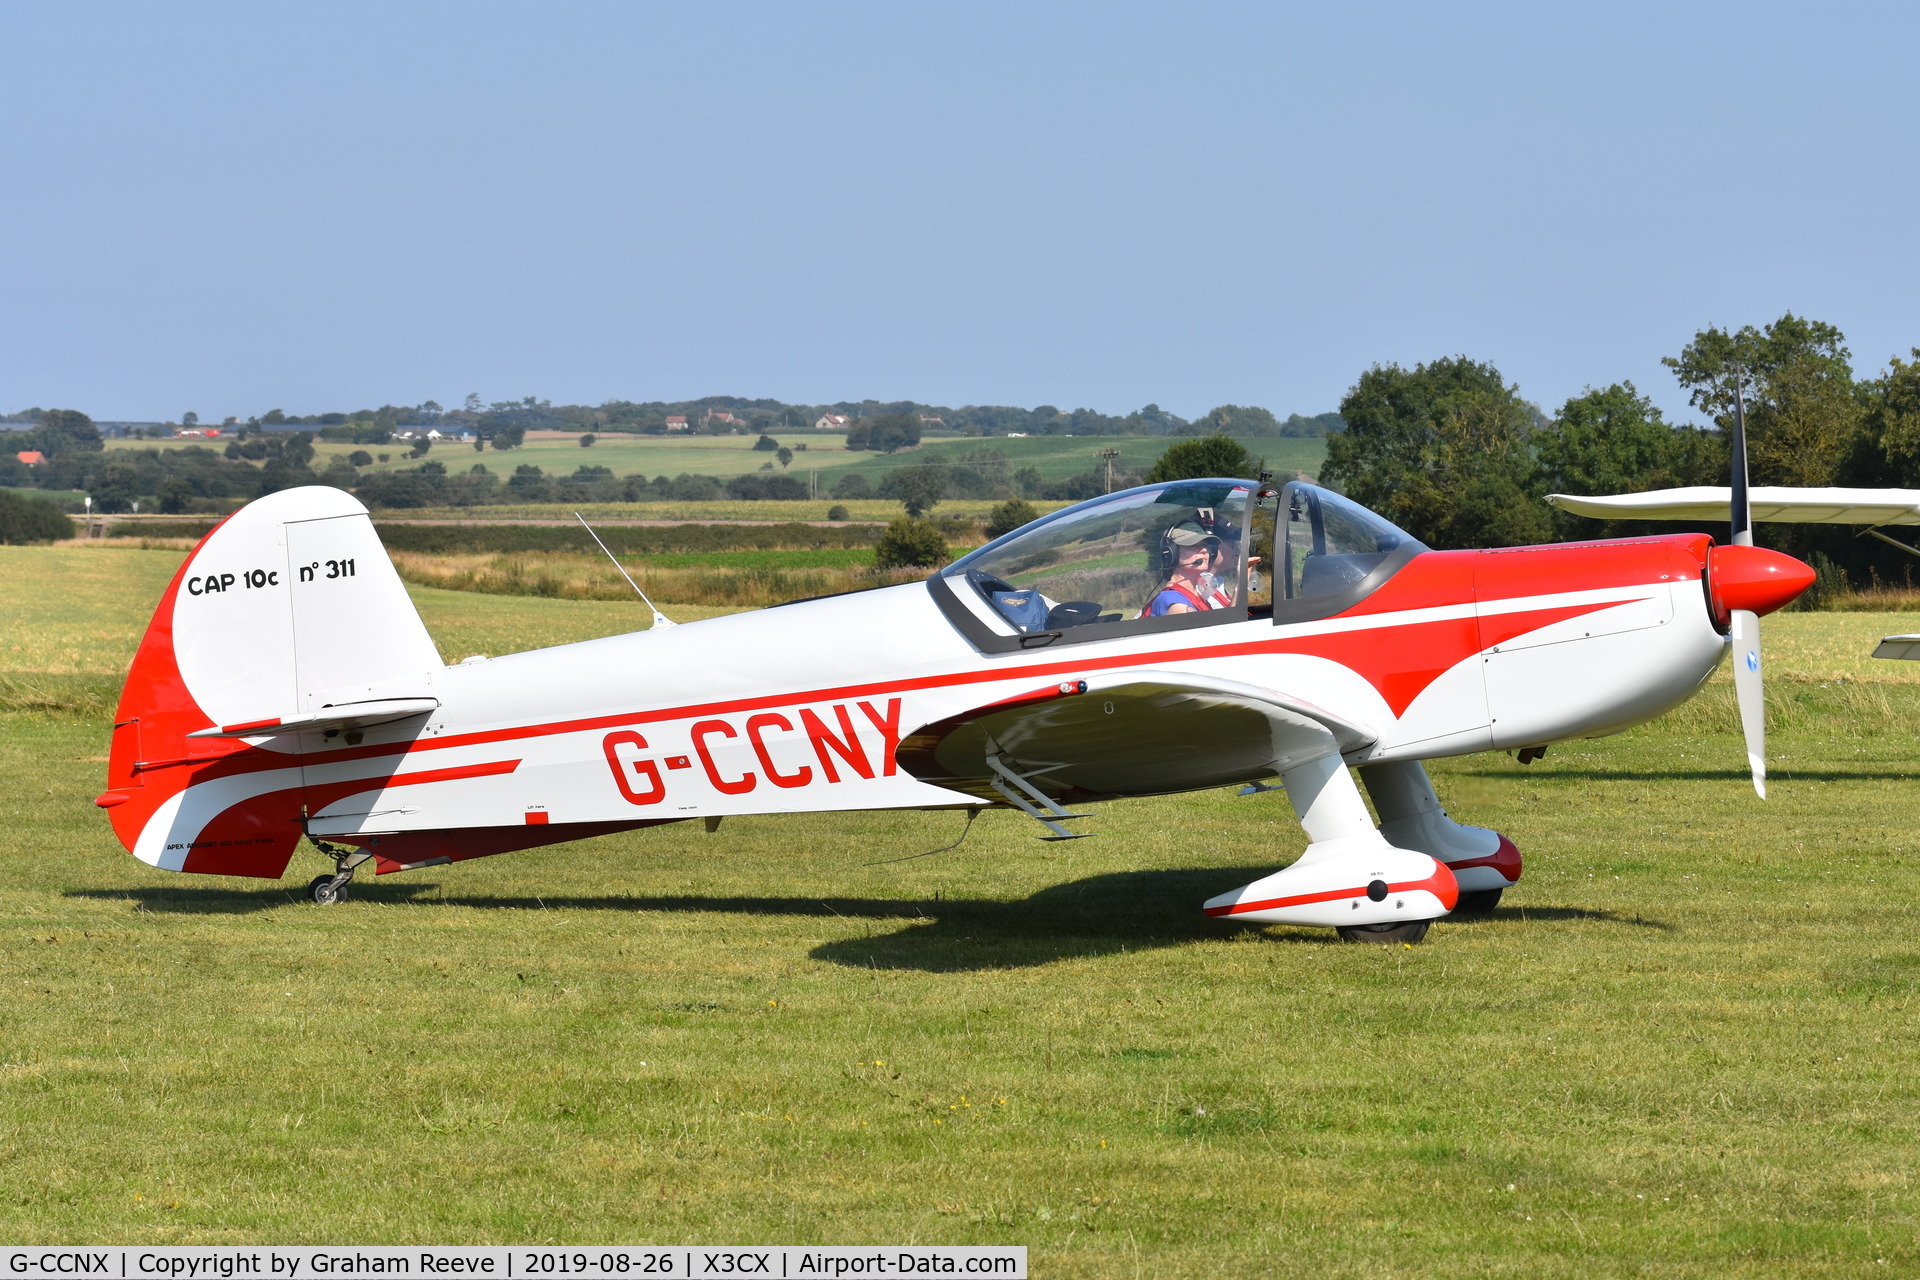 G-CCNX, 2004 Mudry CAP-10B C/N 311, Just landed at Northrepps.